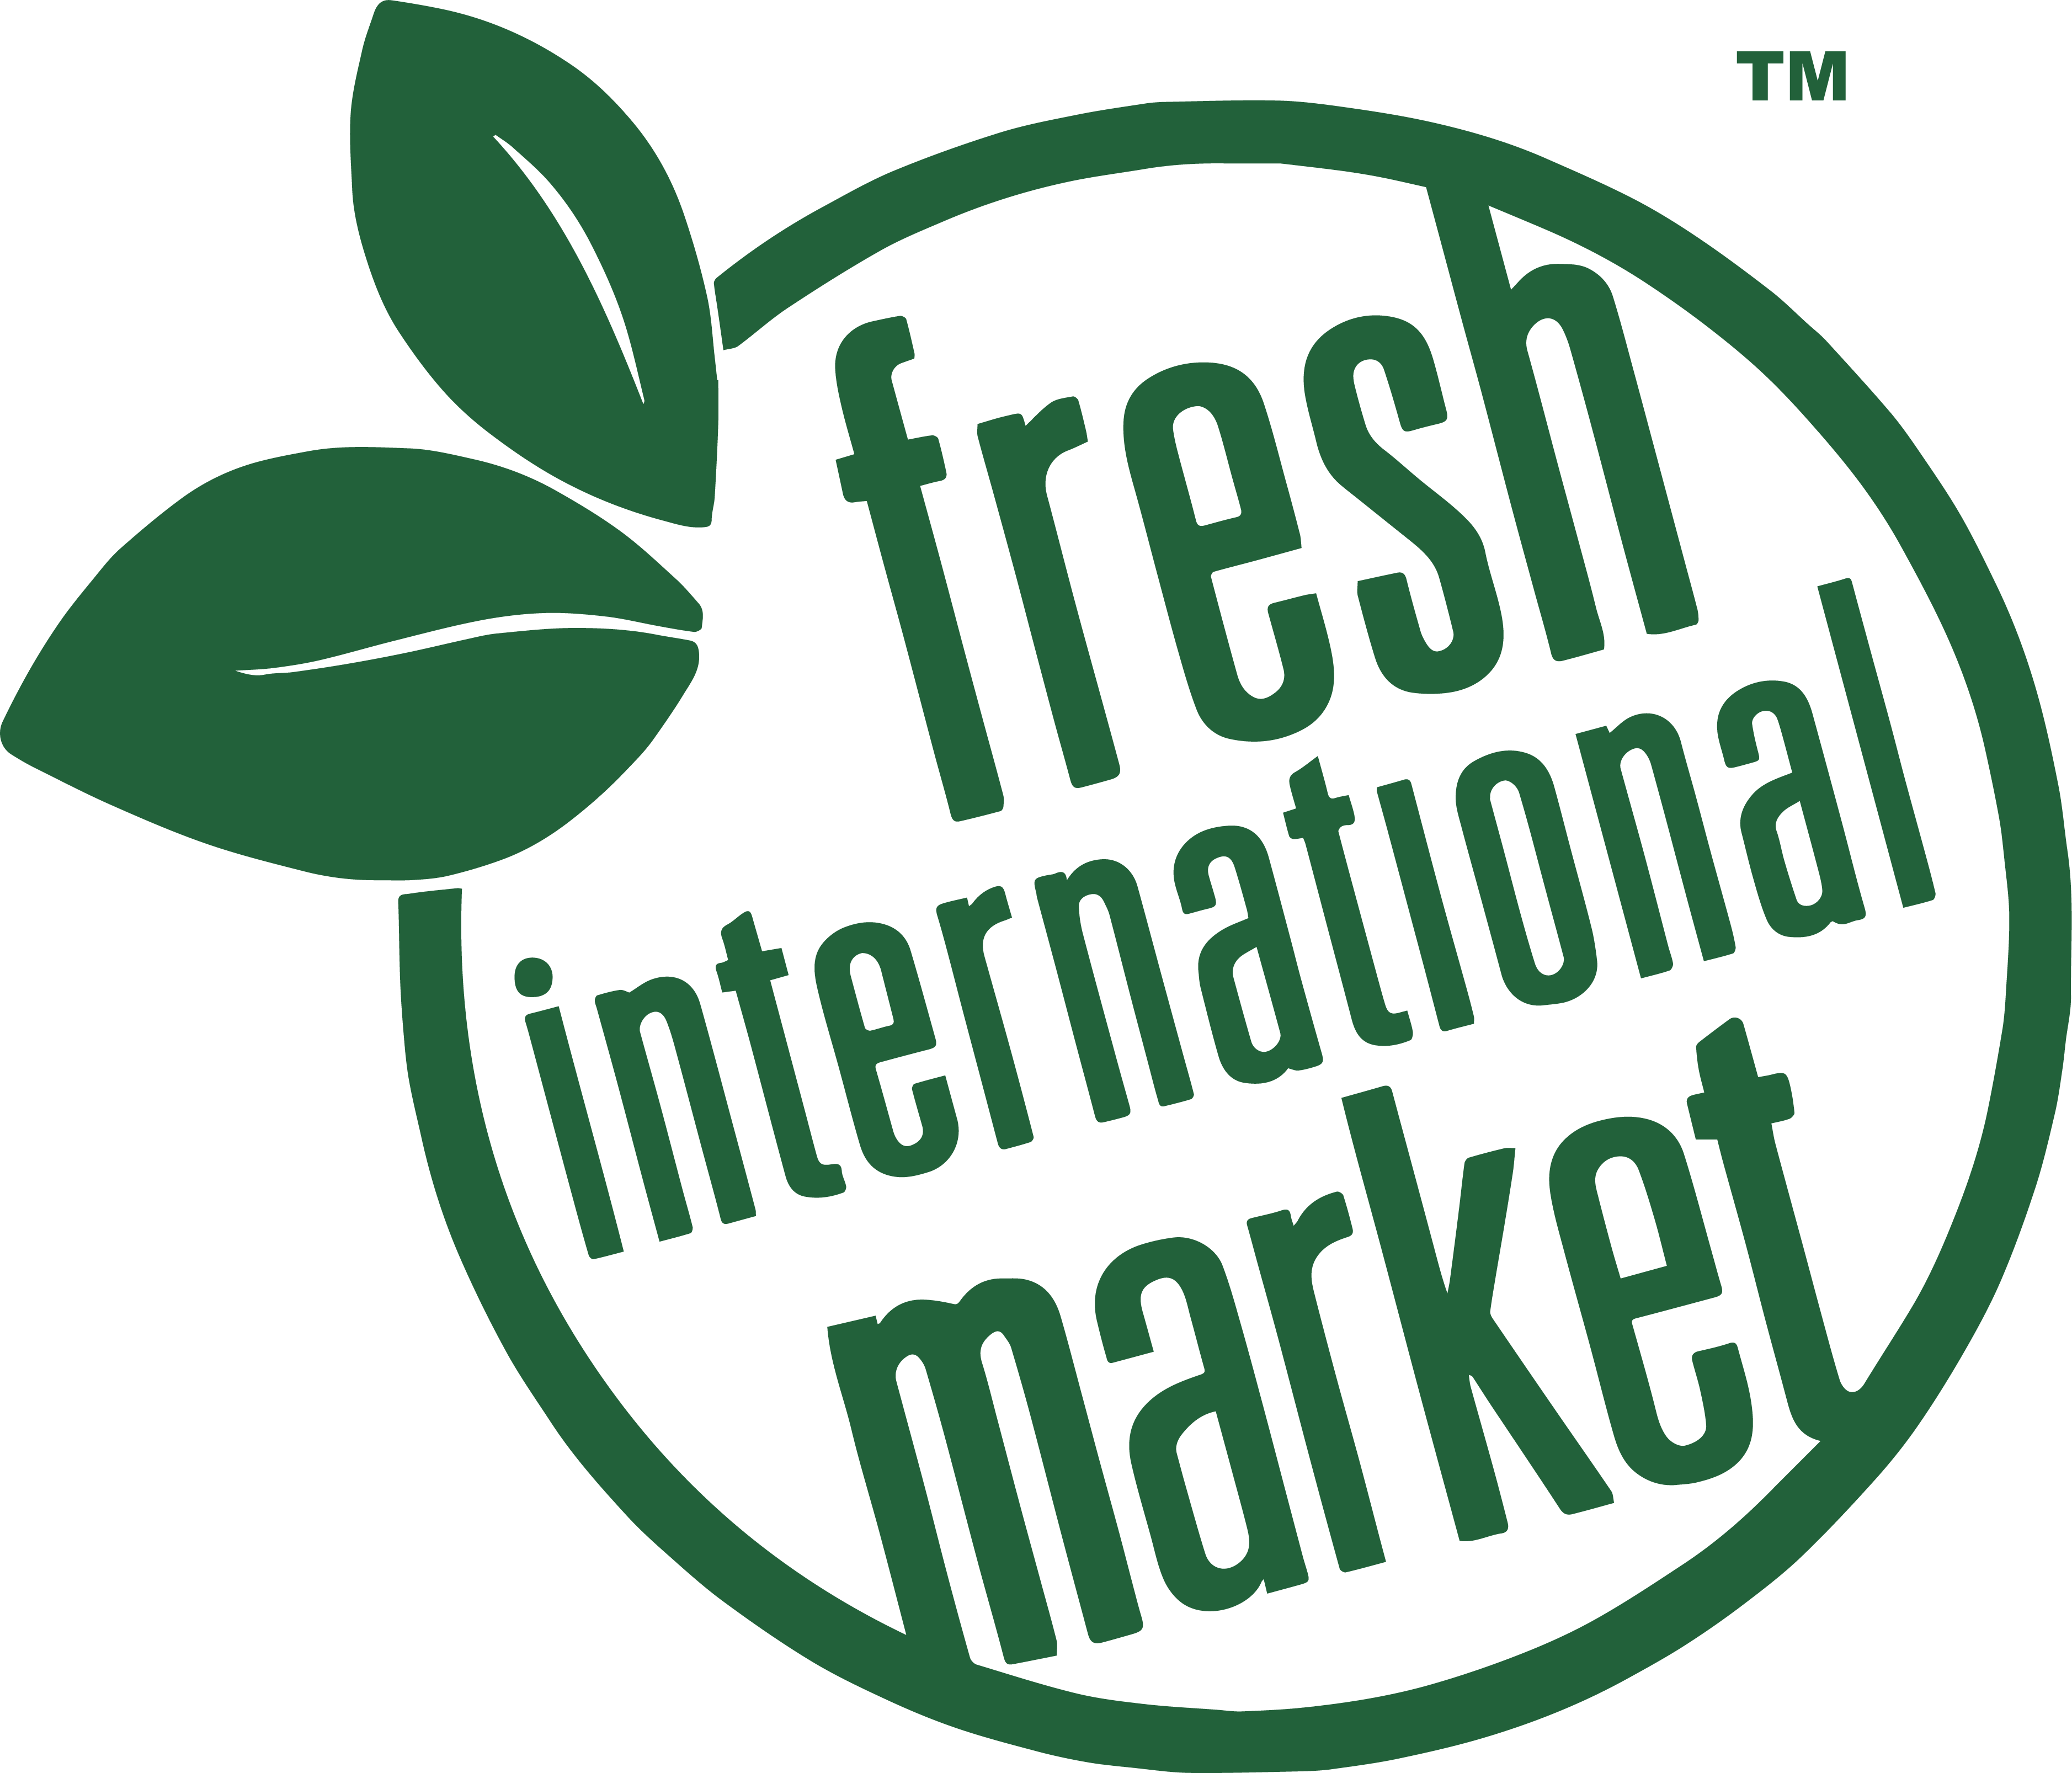 https://freshimarket.com/wp-content/uploads/2020/03/Official-Logo.png